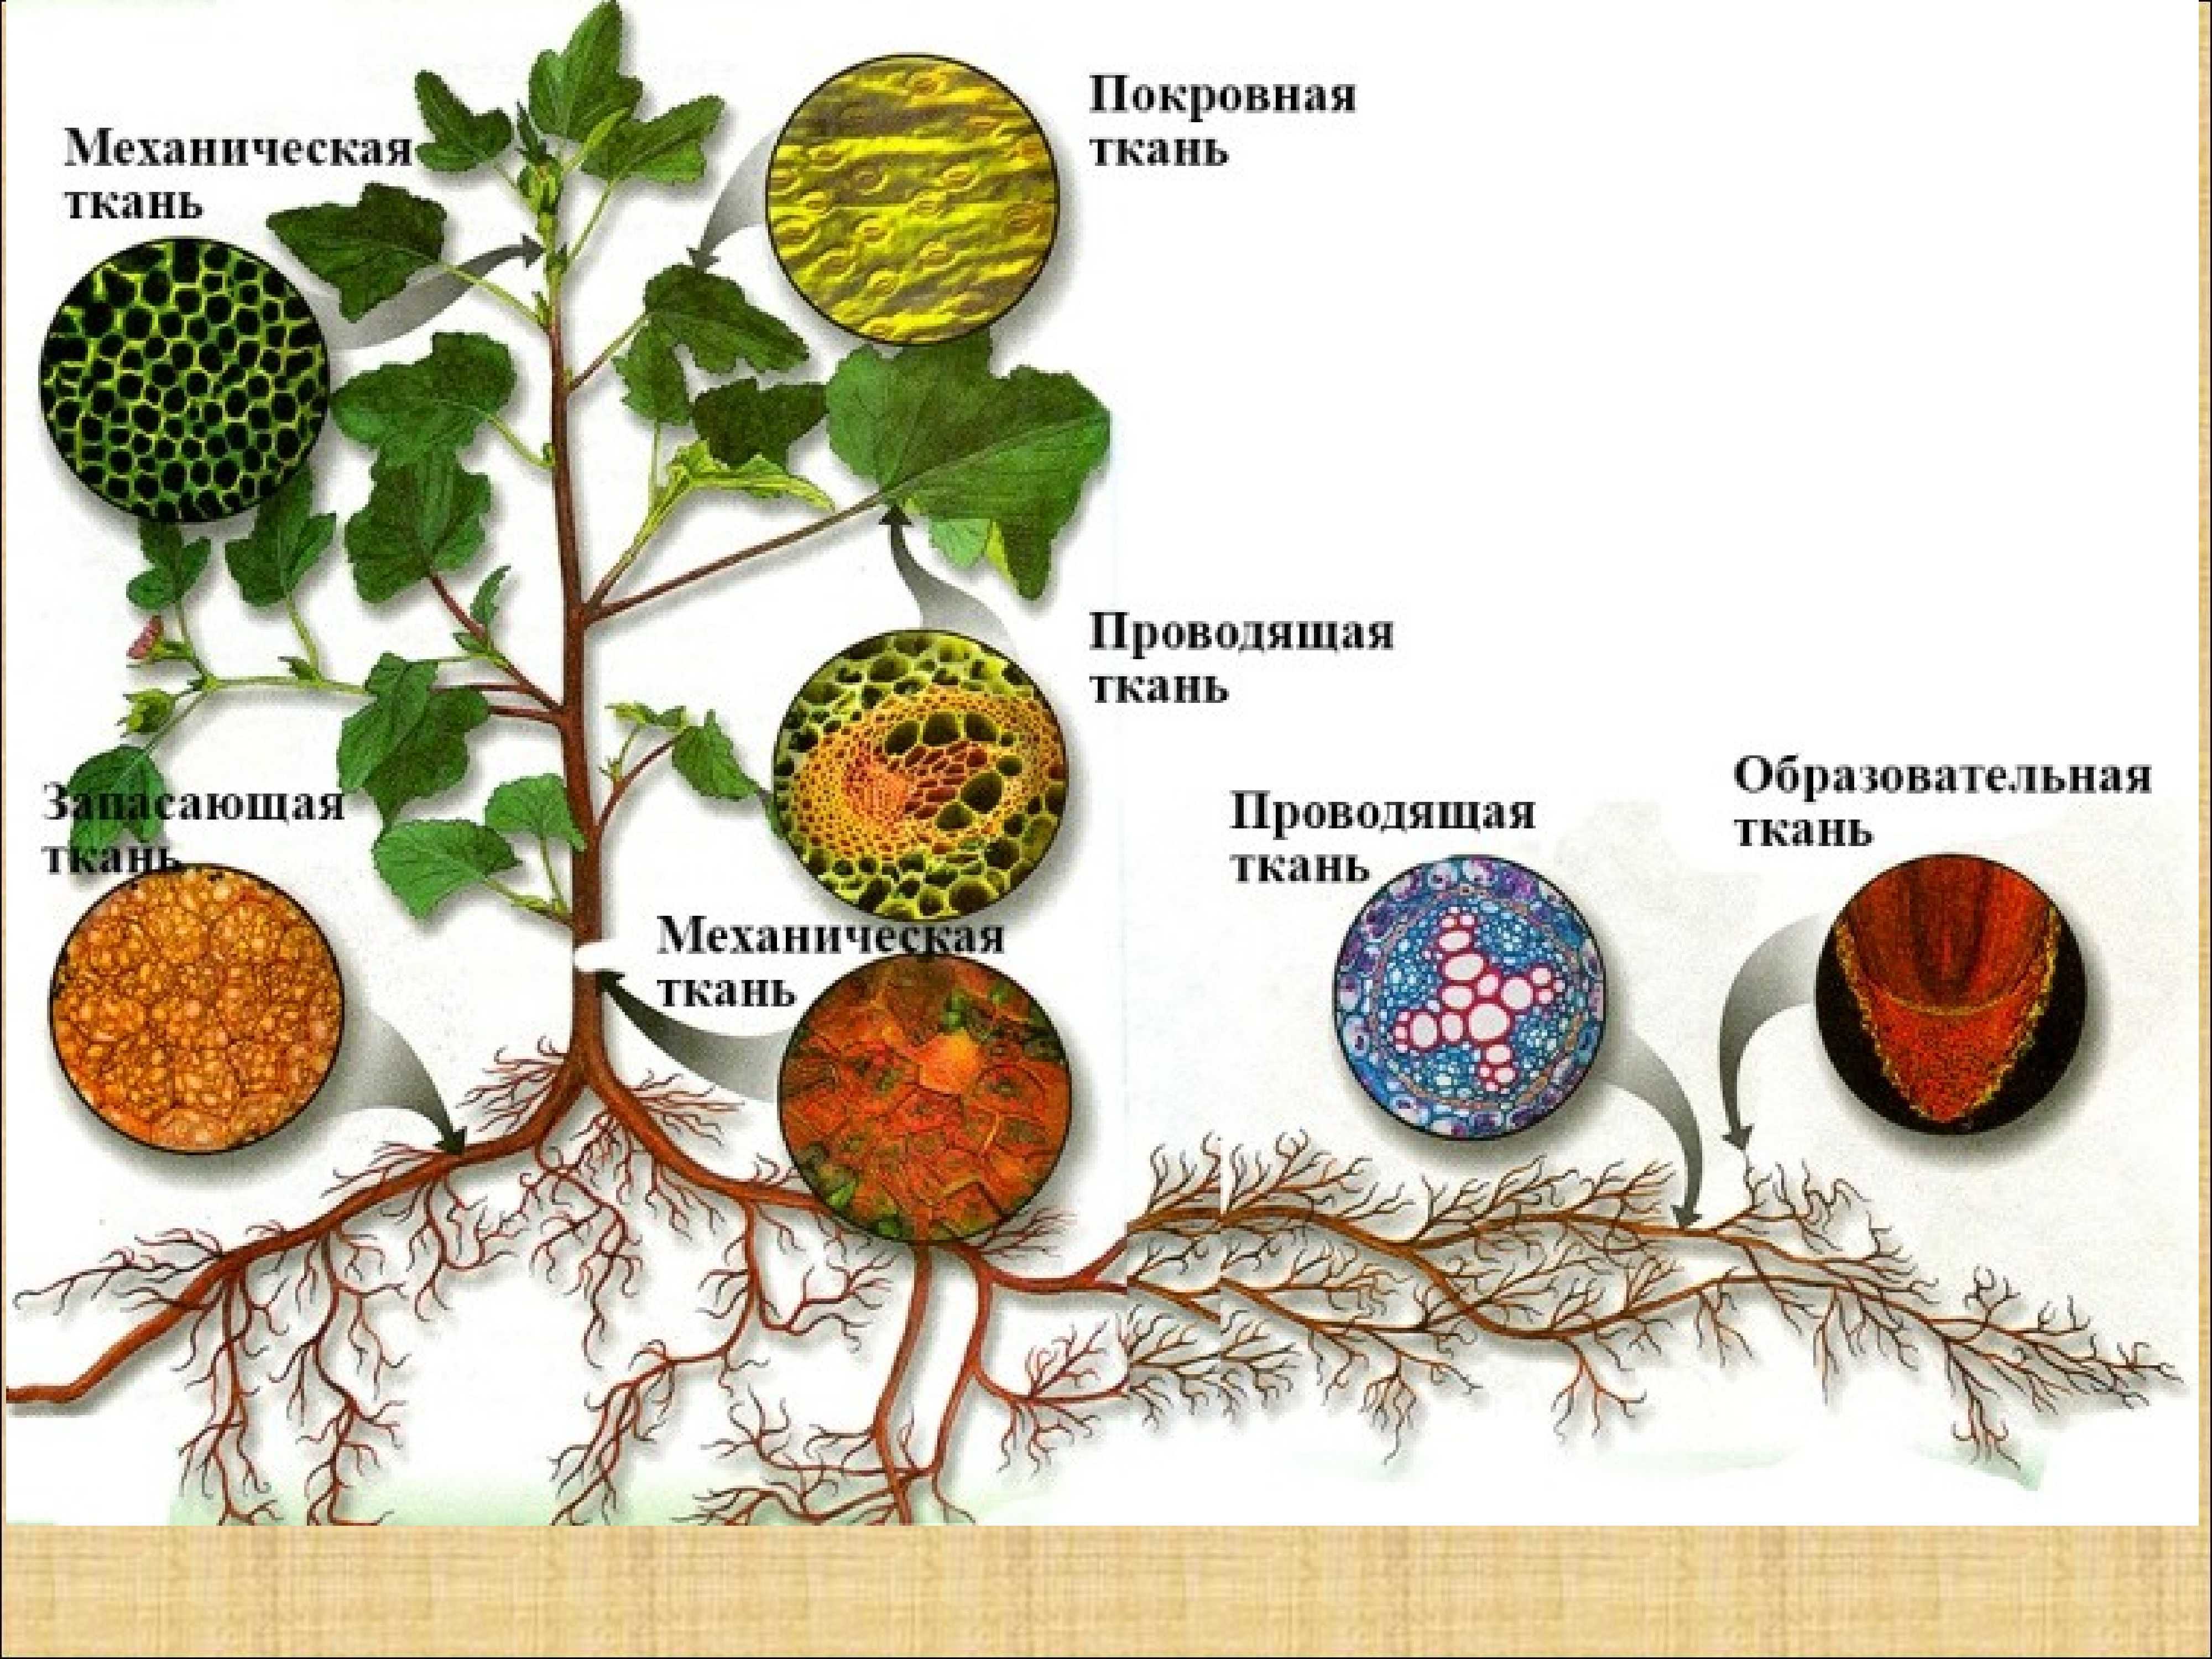 Ткани высших растений.